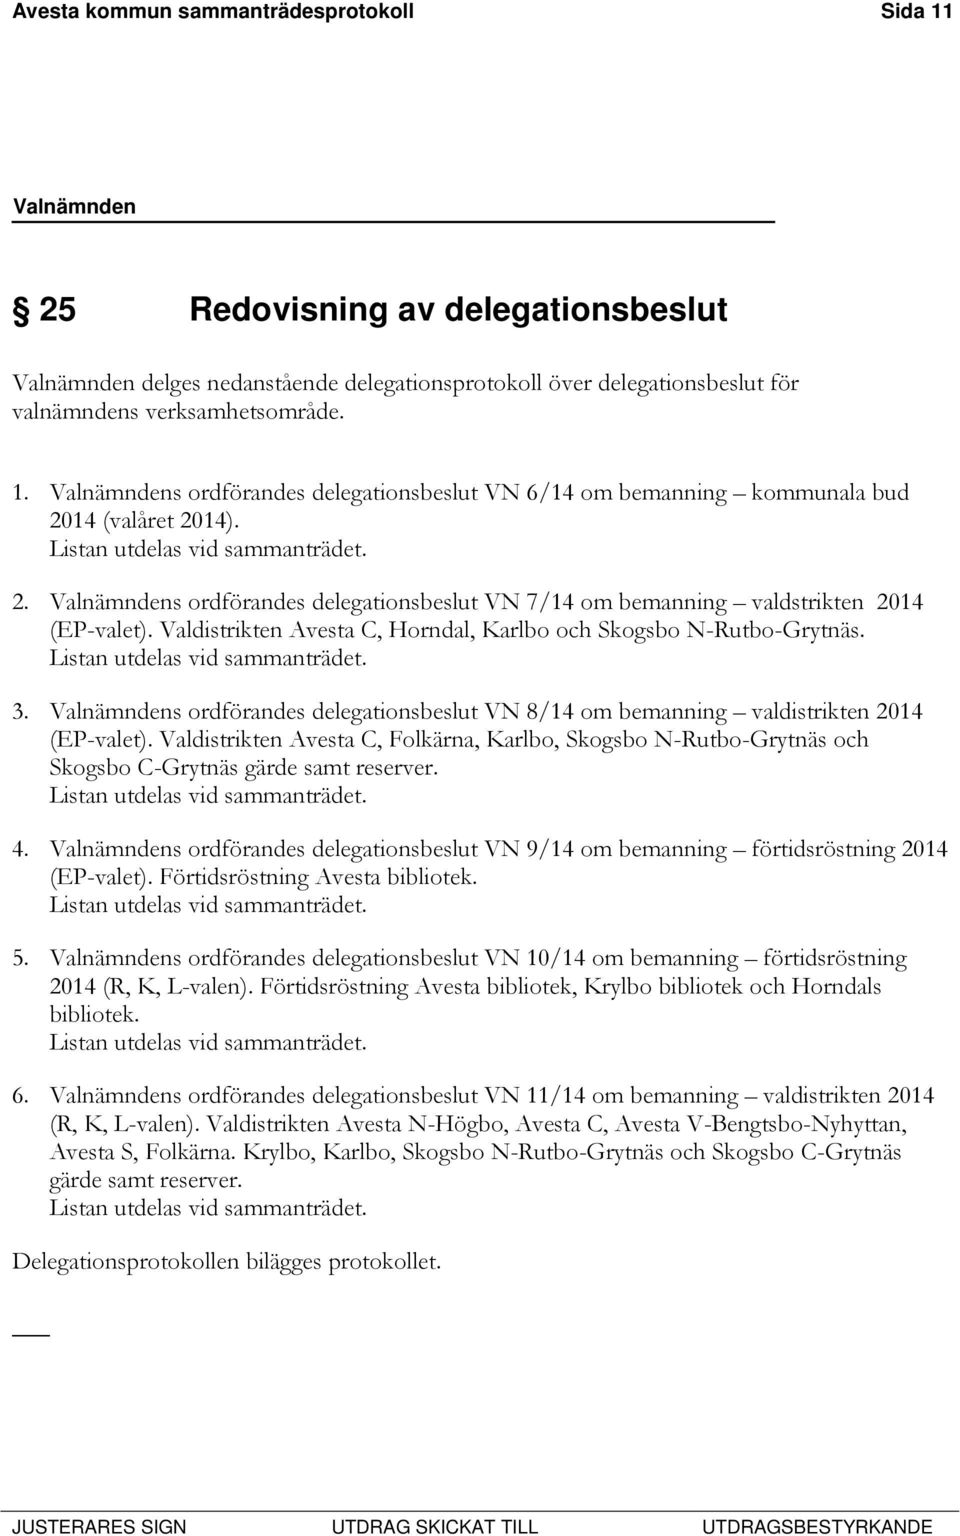 Listan utdelas vid sammanträdet. 3. Valnämndens ordförandes delegationsbeslut VN 8/14 om bemanning valdistrikten 2014 (EP-valet).